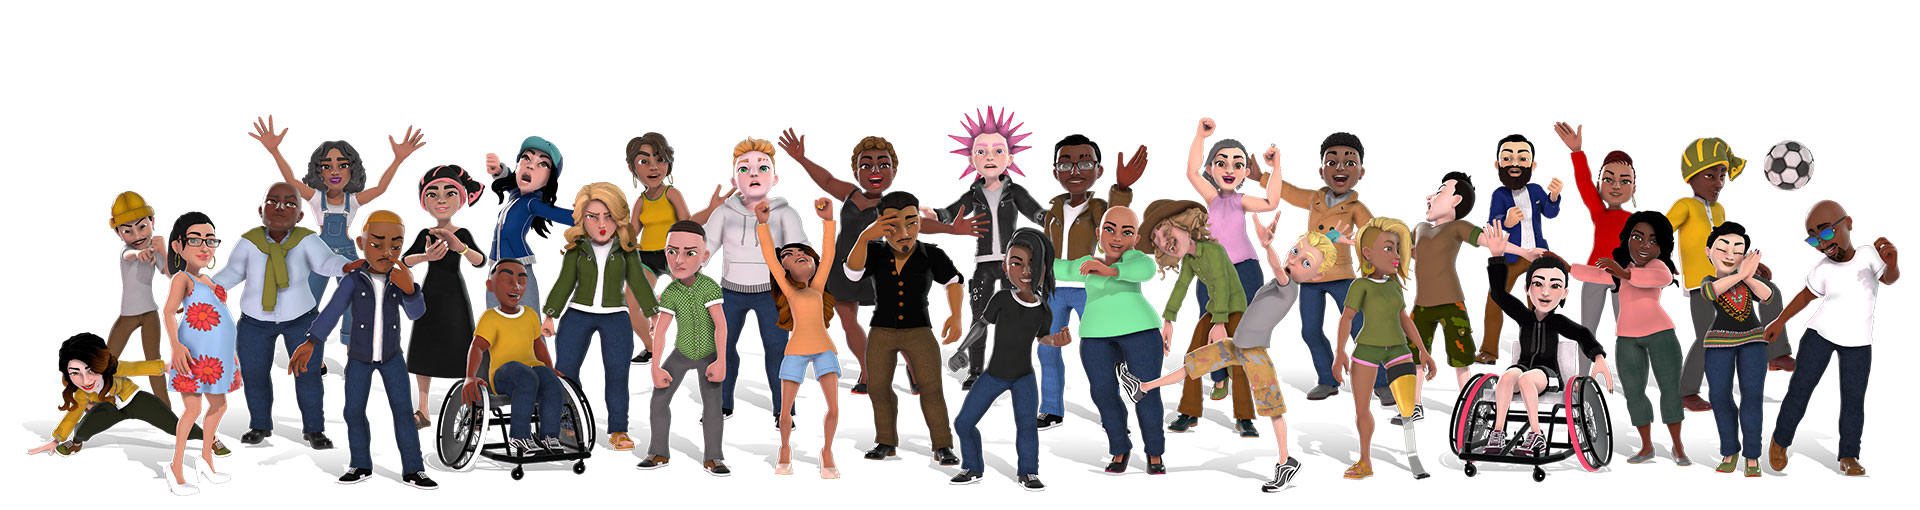 Avatares do Xbox mostrando um grupo diversificado de pessoas em diferentes roupas